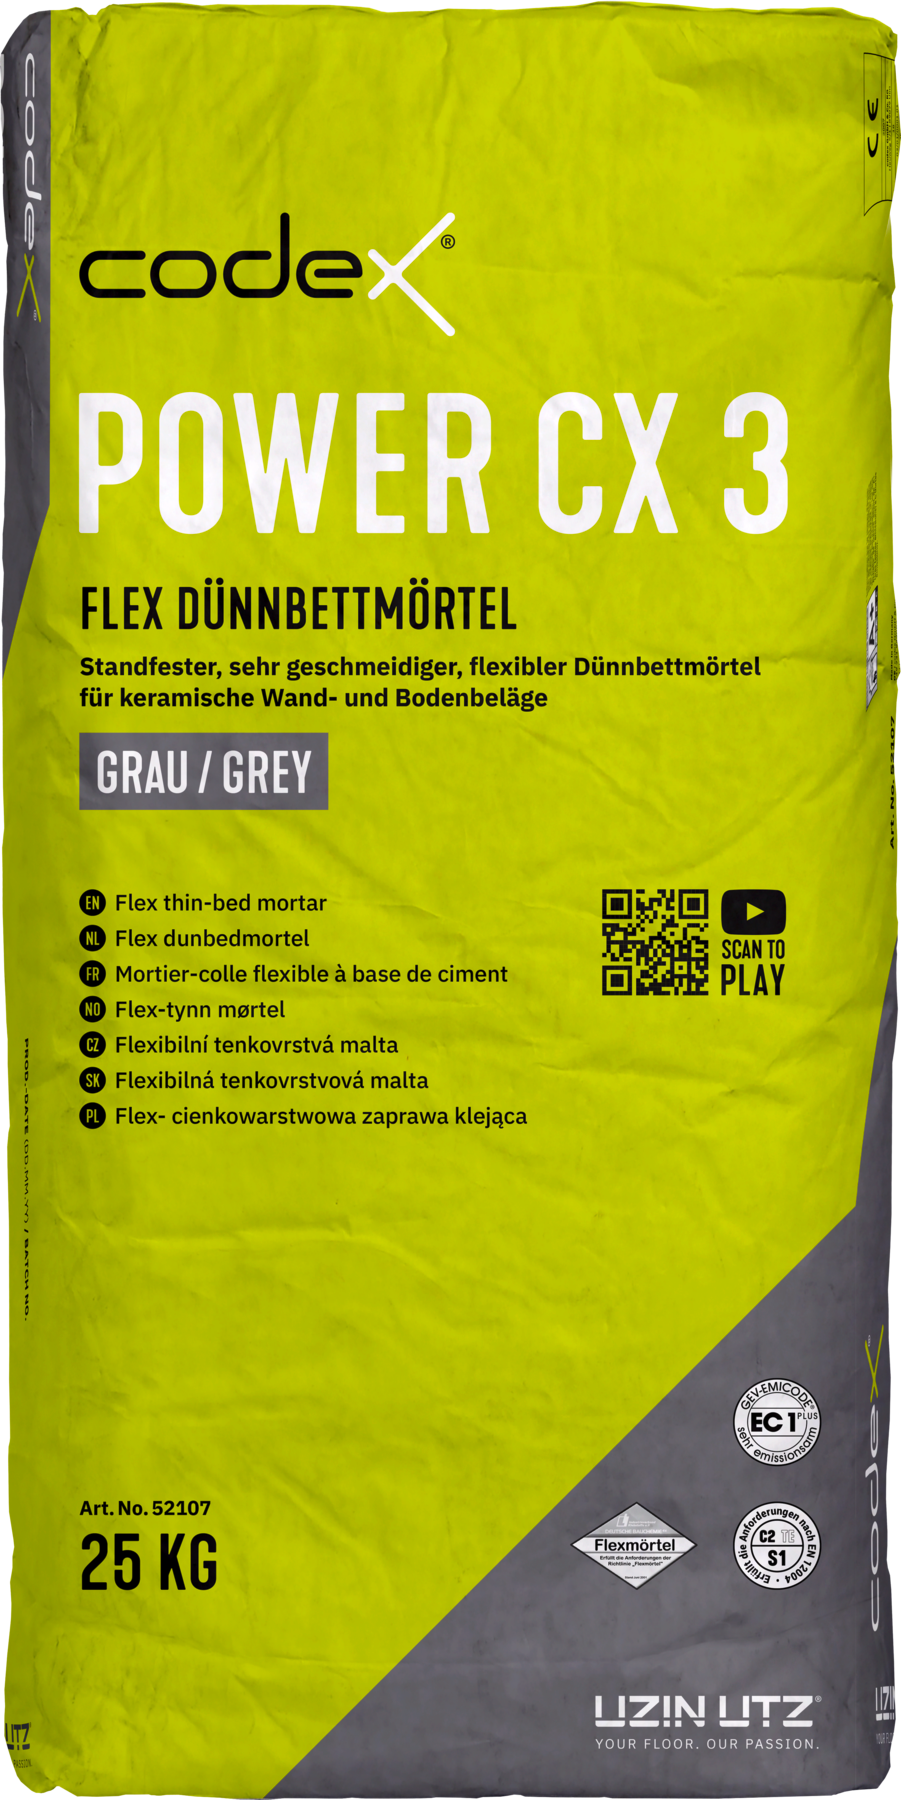 Codex Power CX 3 5 kg Flex Dünnbettmörtel